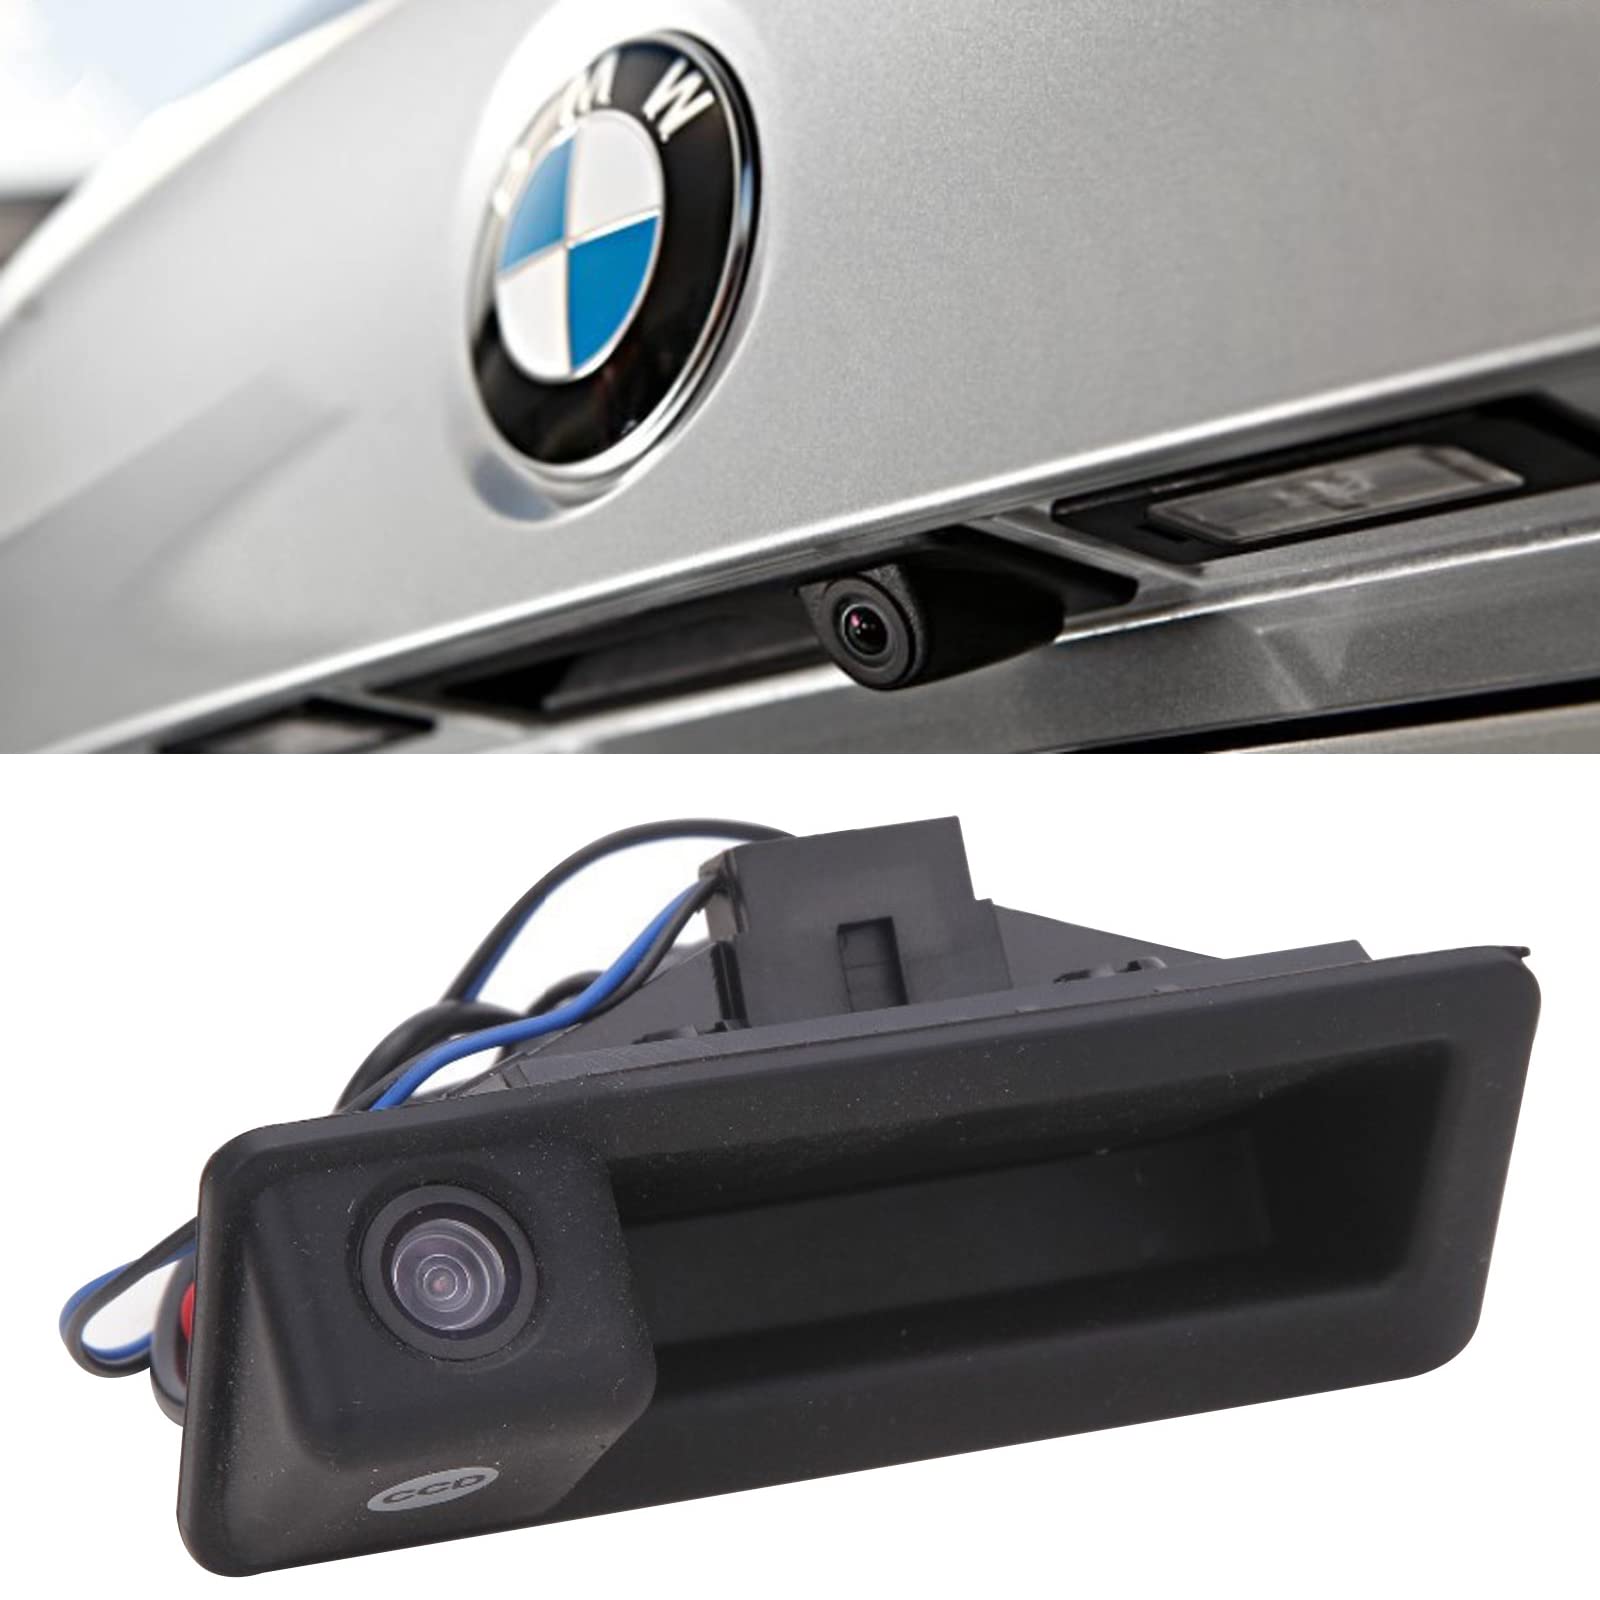 Rückfahrkamera für Autos, 170 Grad Weitwinkel Auto Nachtsicht Wasserdicht Rückfahrkamera im Koffergriff integriert für BMW E60 E61 E70 E71 E72 E82 E88 E84 E90 E91 E92 E93 X1 X5 von Honeyhouse